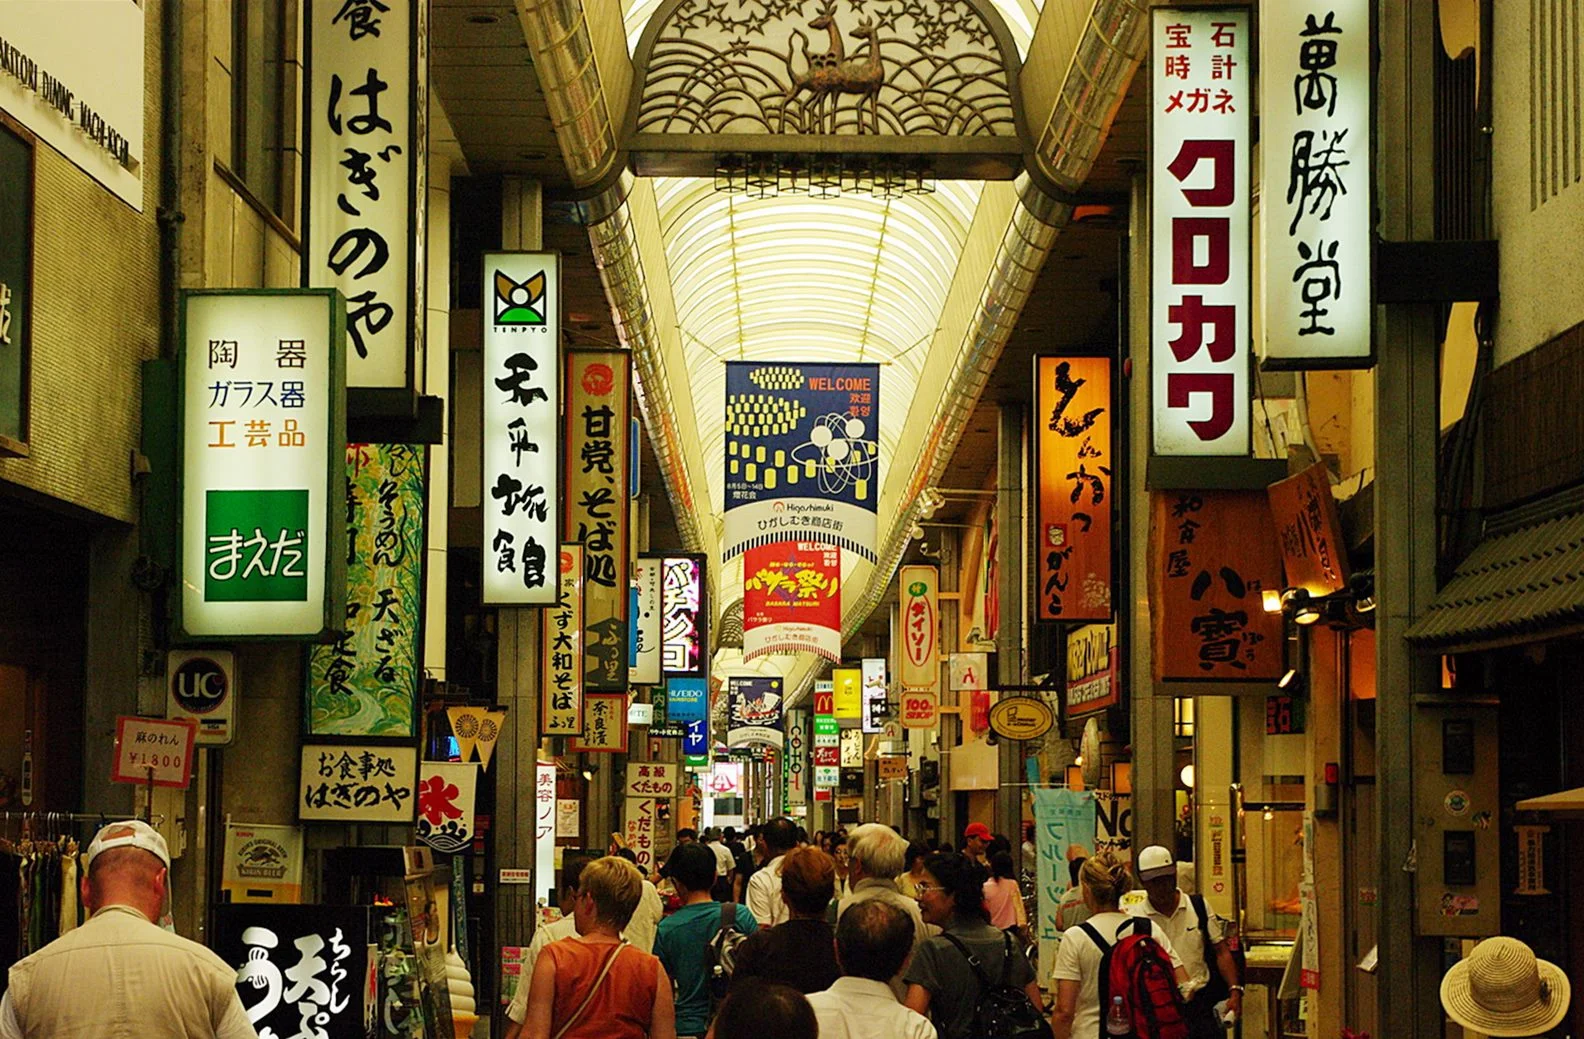 奈良-奈良景點-推薦-東向商店街-Higashimuki Shopping Street-市區-自由行-奈良必玩景點-奈良必遊景點-奈良一日遊-奈良好玩景點-必去-旅遊-觀光-日本-Nara-Tourist-Attraction